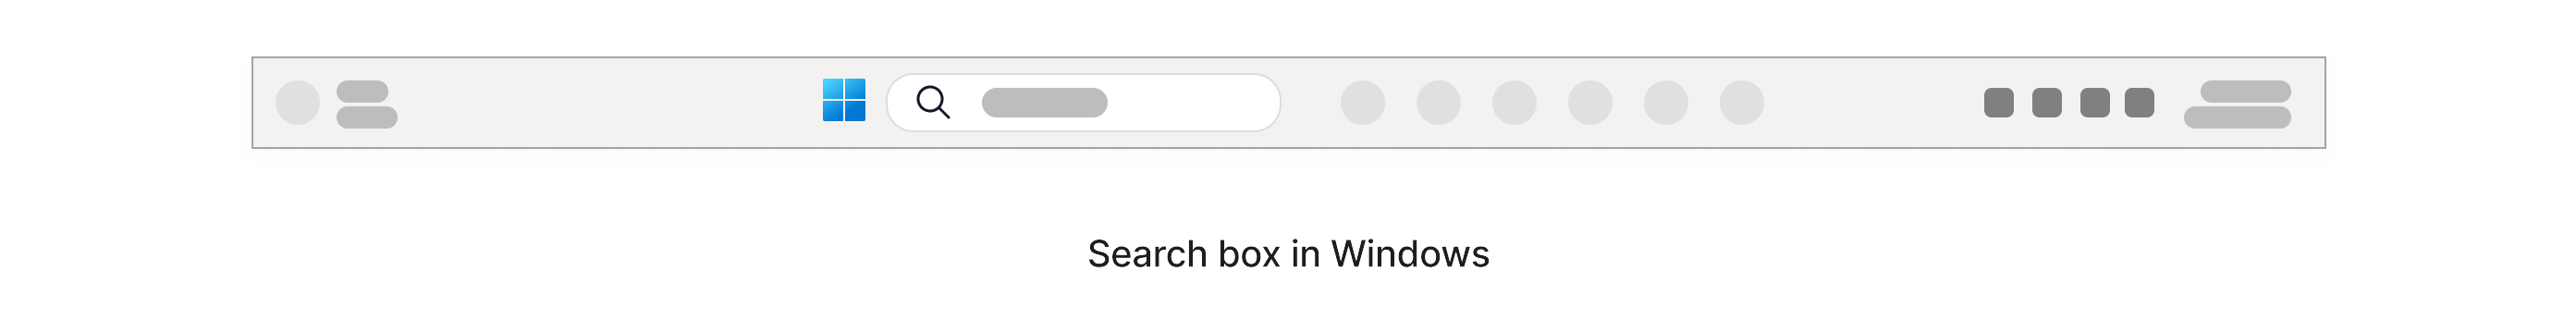 Hộp tìm kiếm với biểu tượng biểu tượng phóng to nằm trong thanh tác vụ Windows ở cuối màn hình.